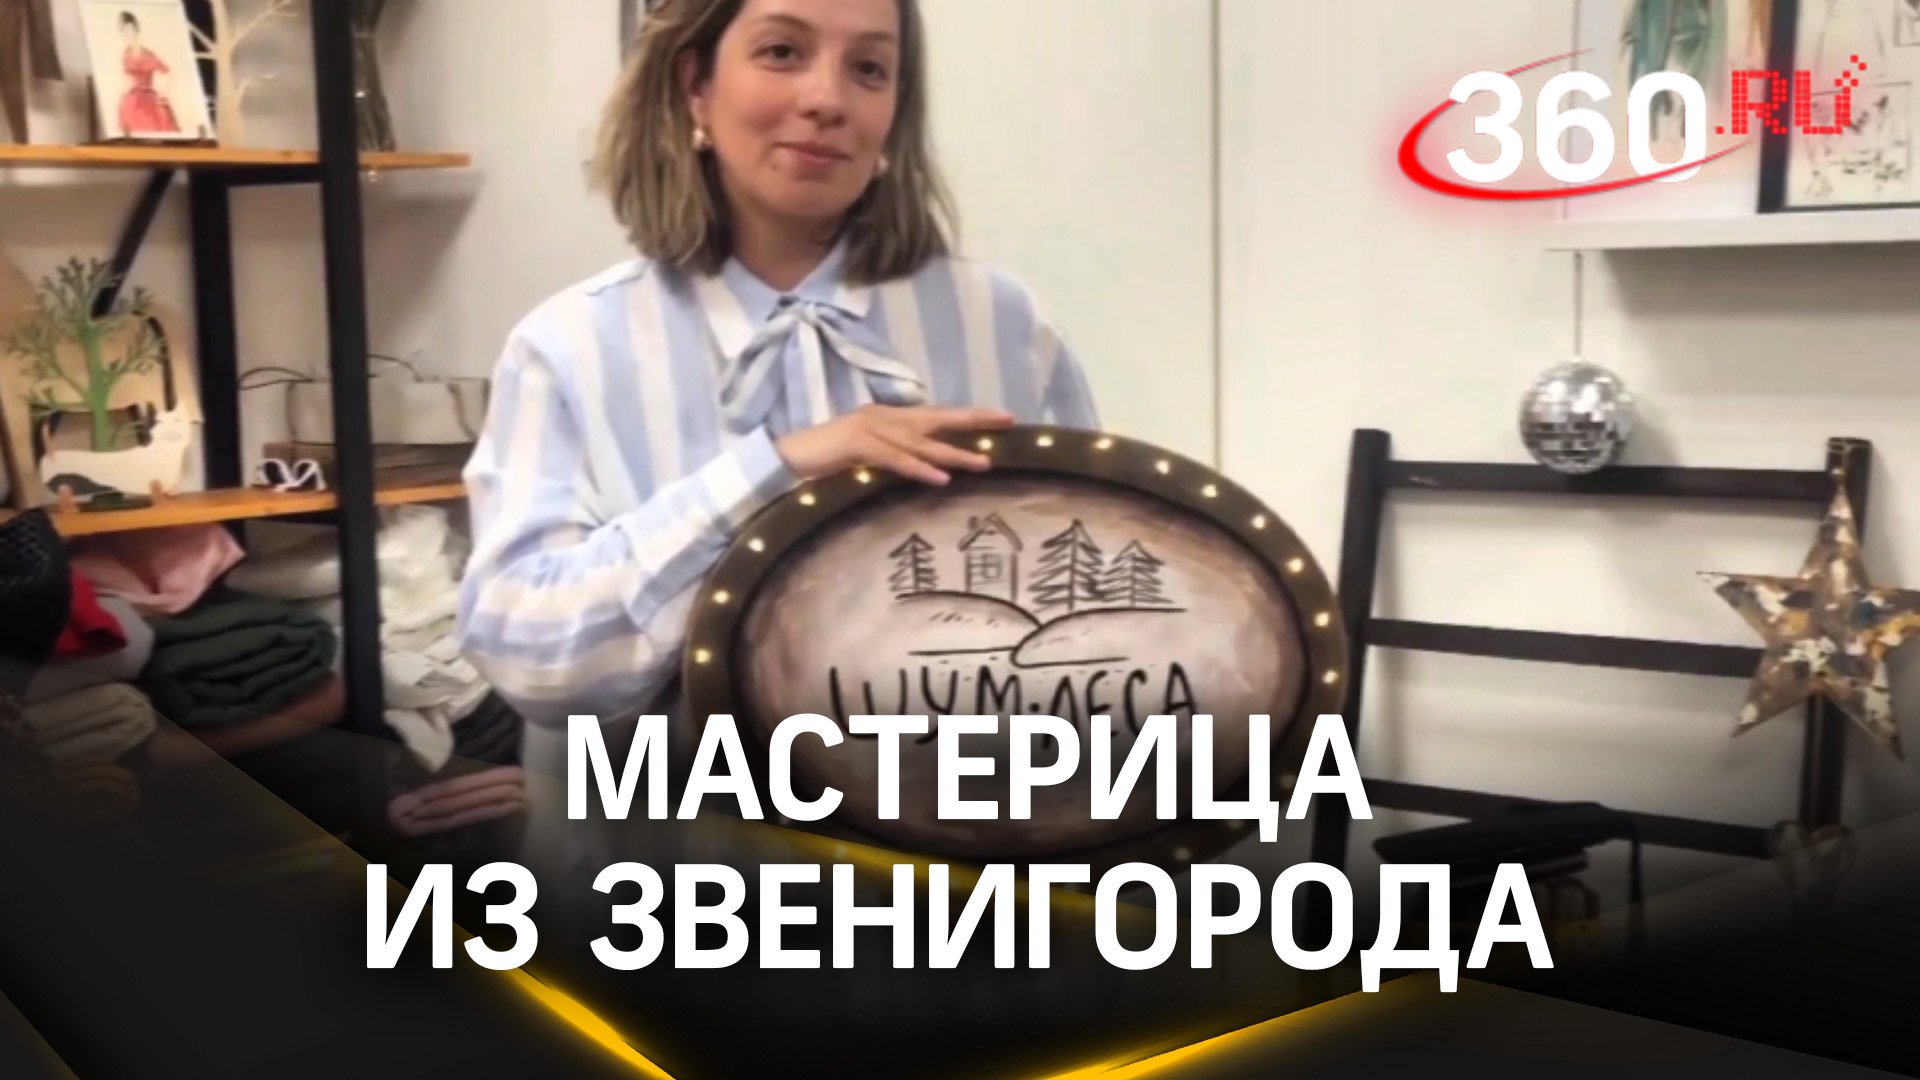 Своими руками: мастерица из Звенигорода покажет свои шедевры на выставке в Москве